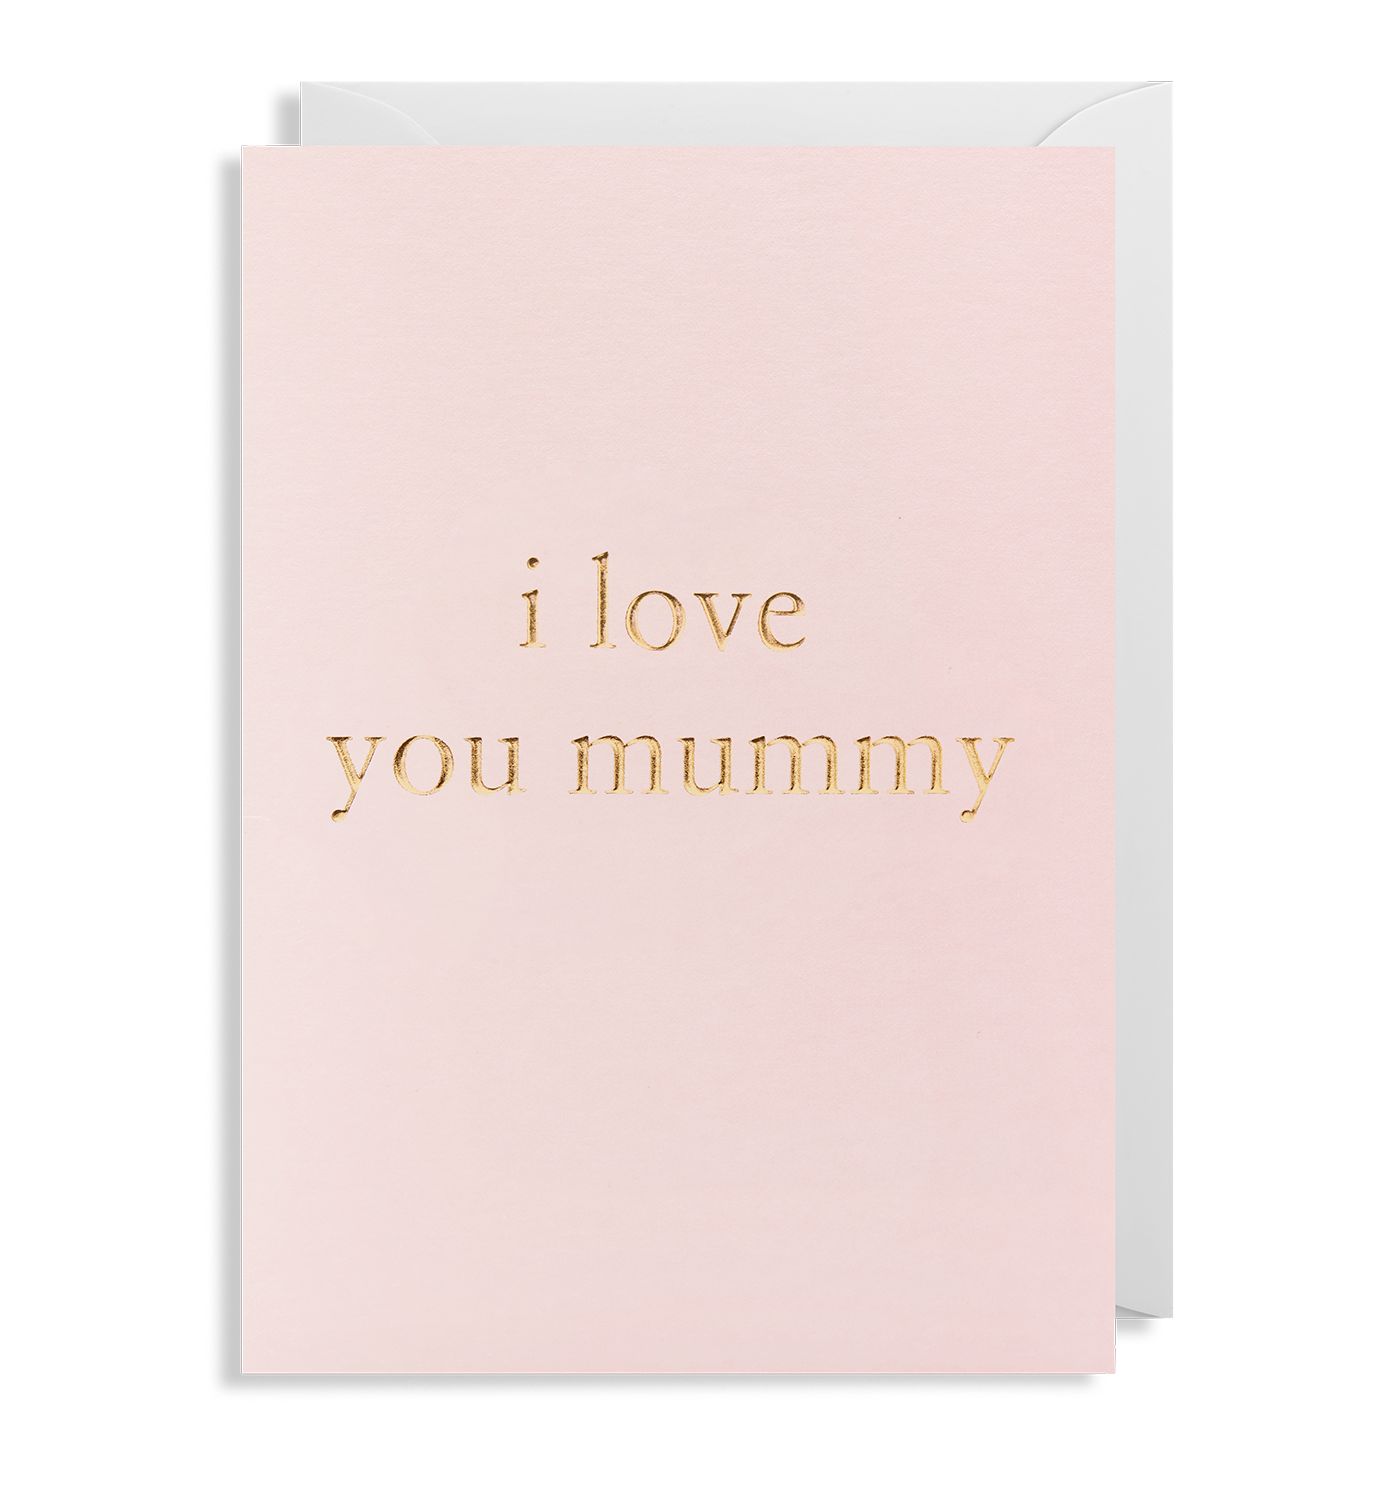 I Love You Mummy Card